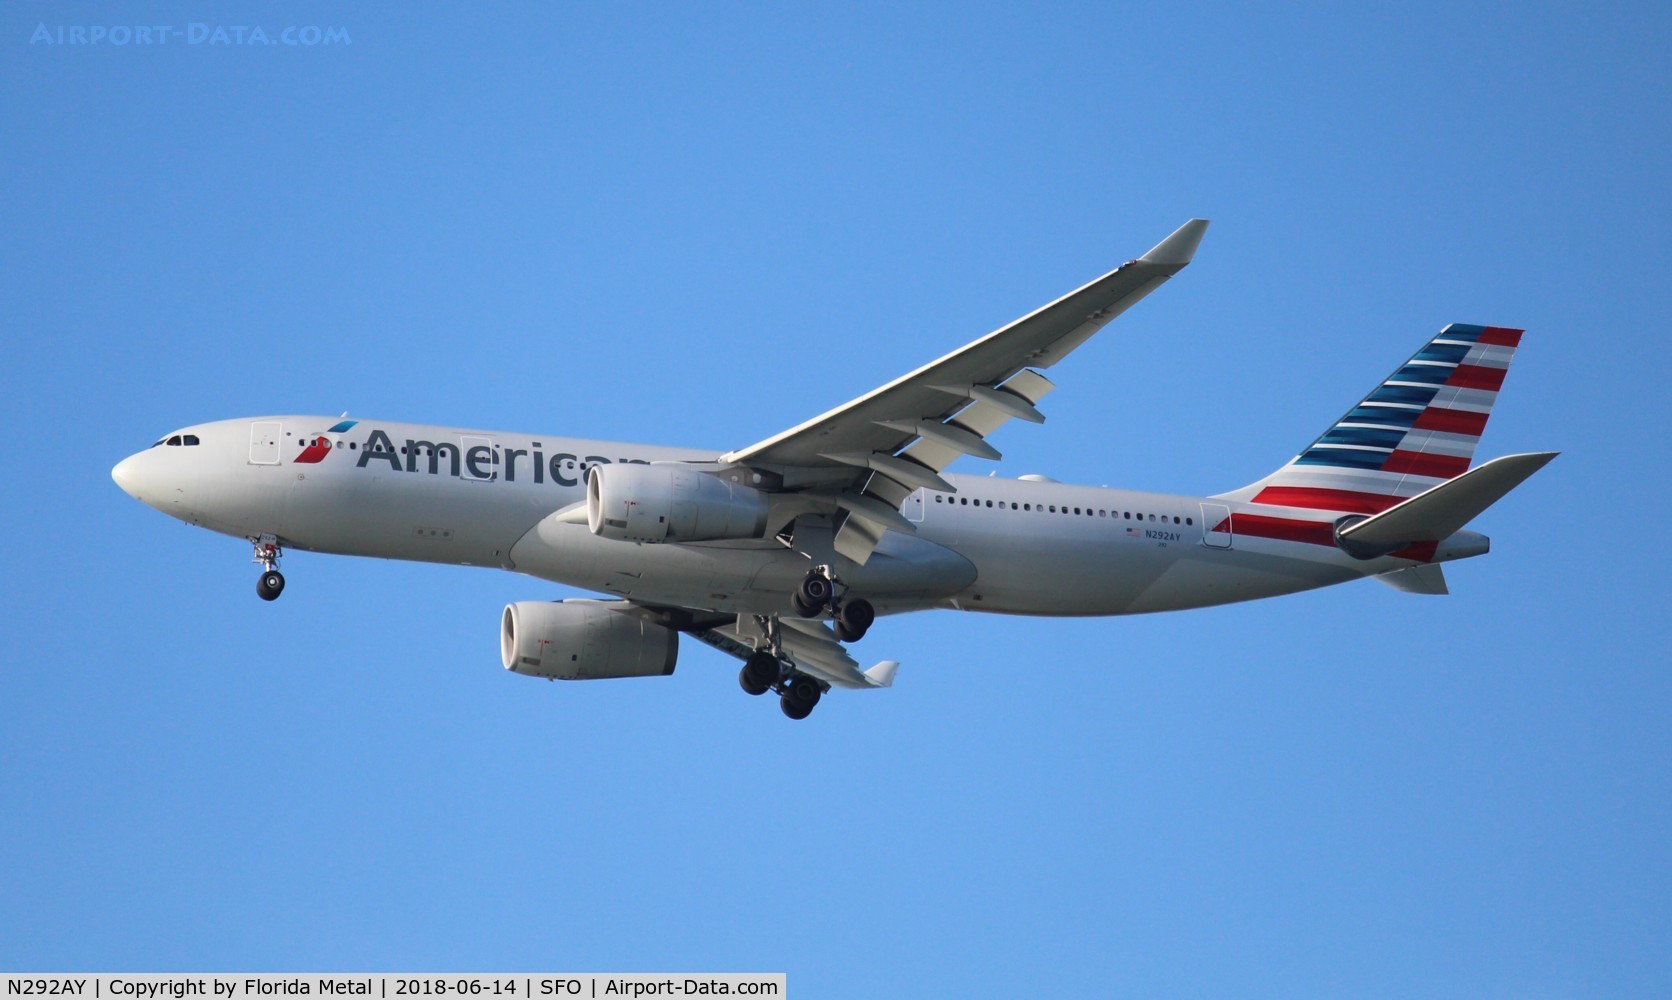 N292AY, 2014 Airbus A330-243 C/N 1512, American